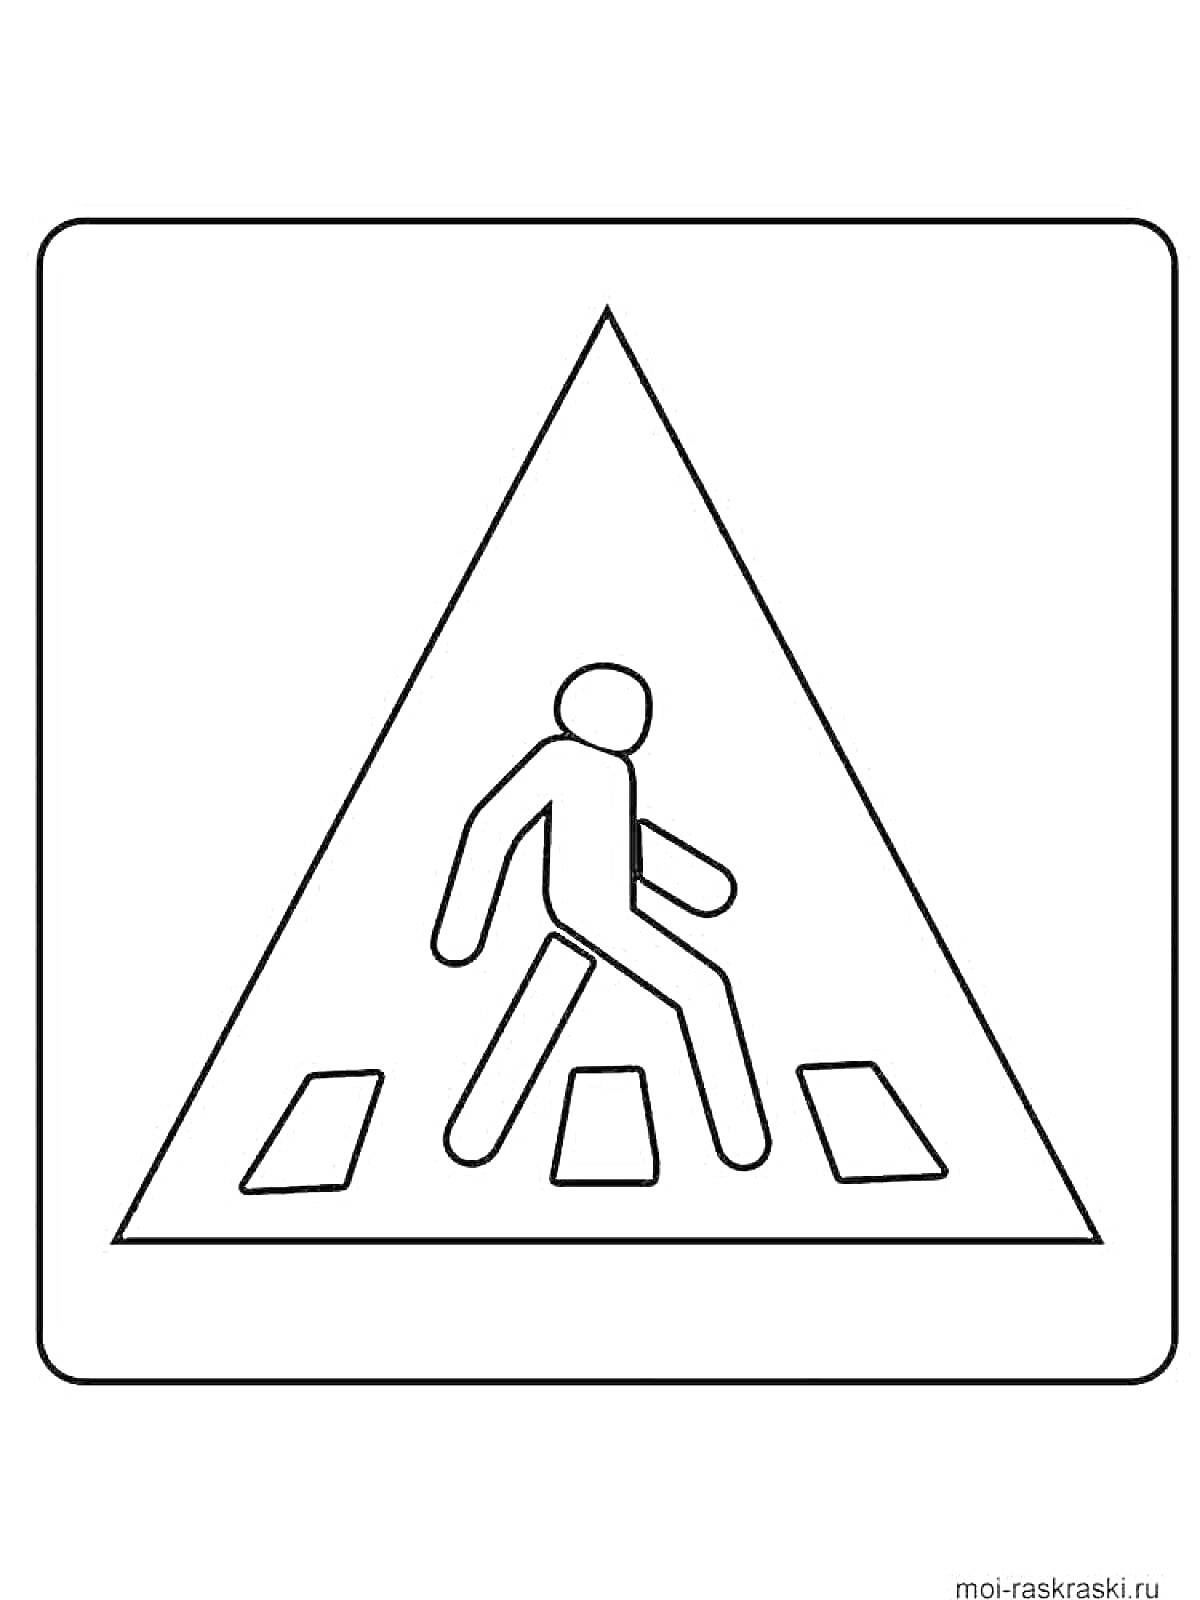 Раскраска Знак пешеходного перехода: человек на пешеходном переходе, треугольный знак